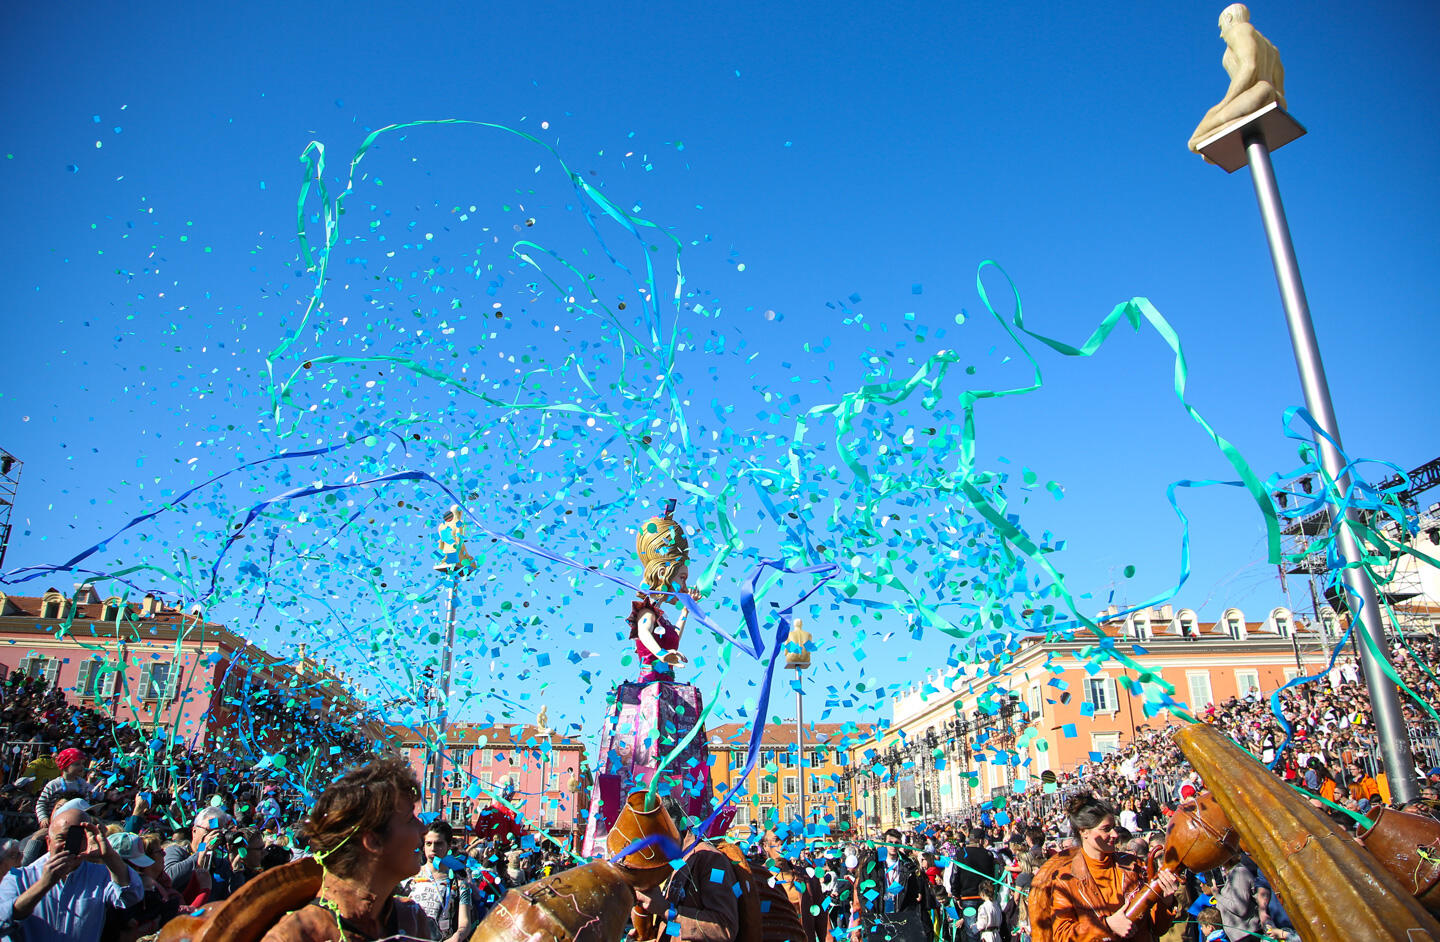 Lebhafte Feier des Karnevals von Nizza mit türkisfarbenem Konfetti, das in der Luft fliegt, begeisterte Menschenmenge und bunte Karnevalsskulpturen unter dem blauen Himmel.